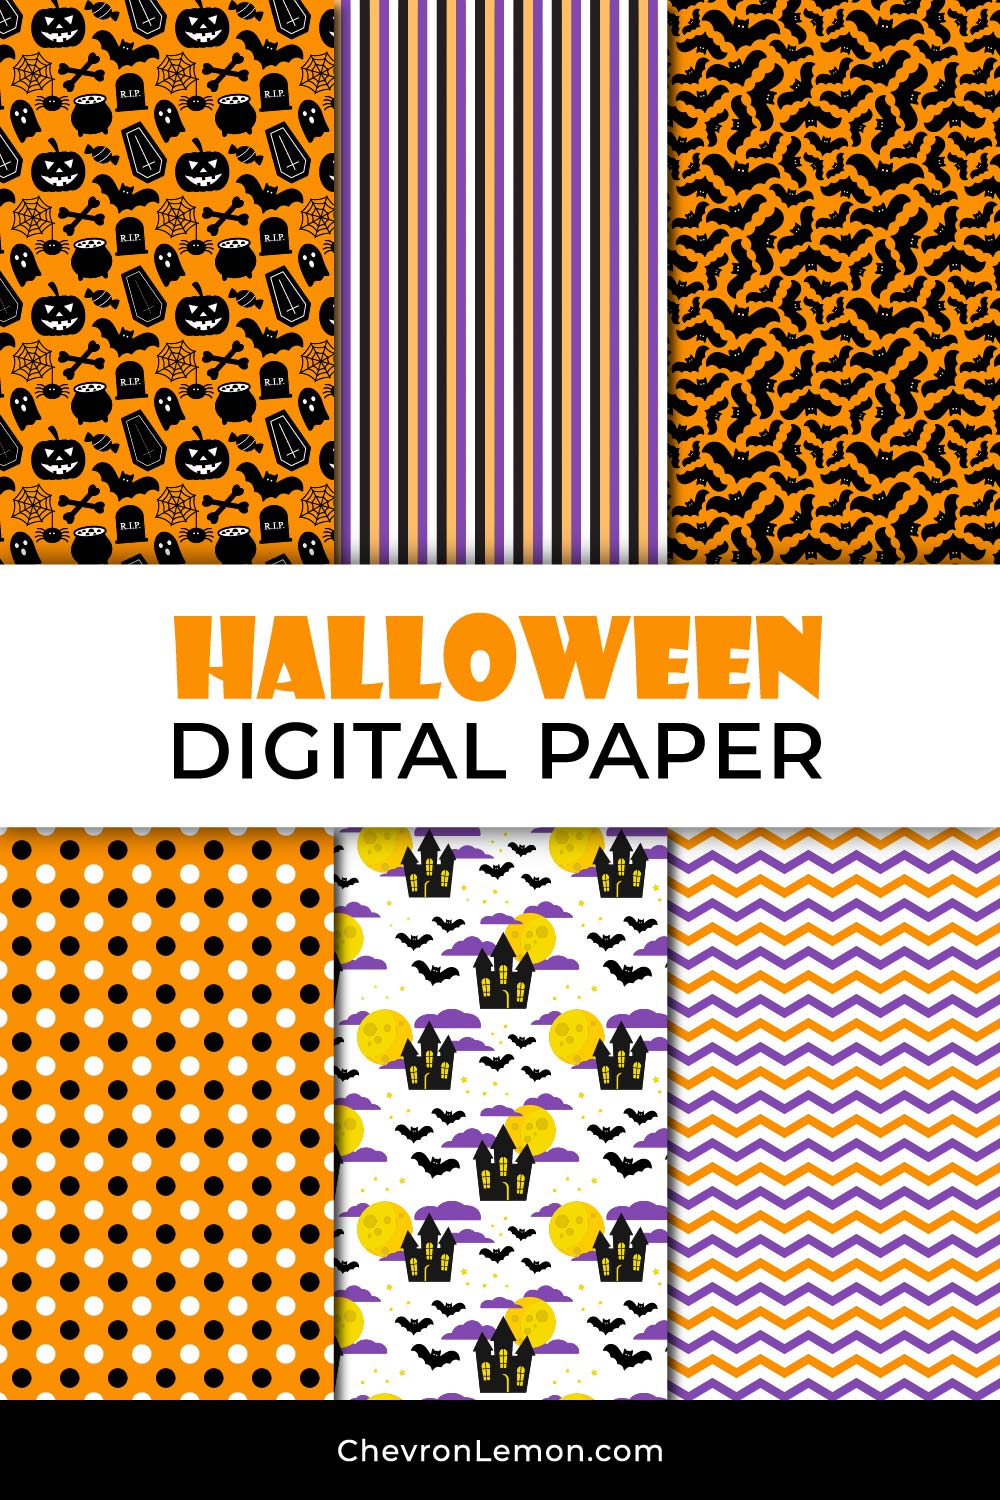 Halloween digital paper pack 